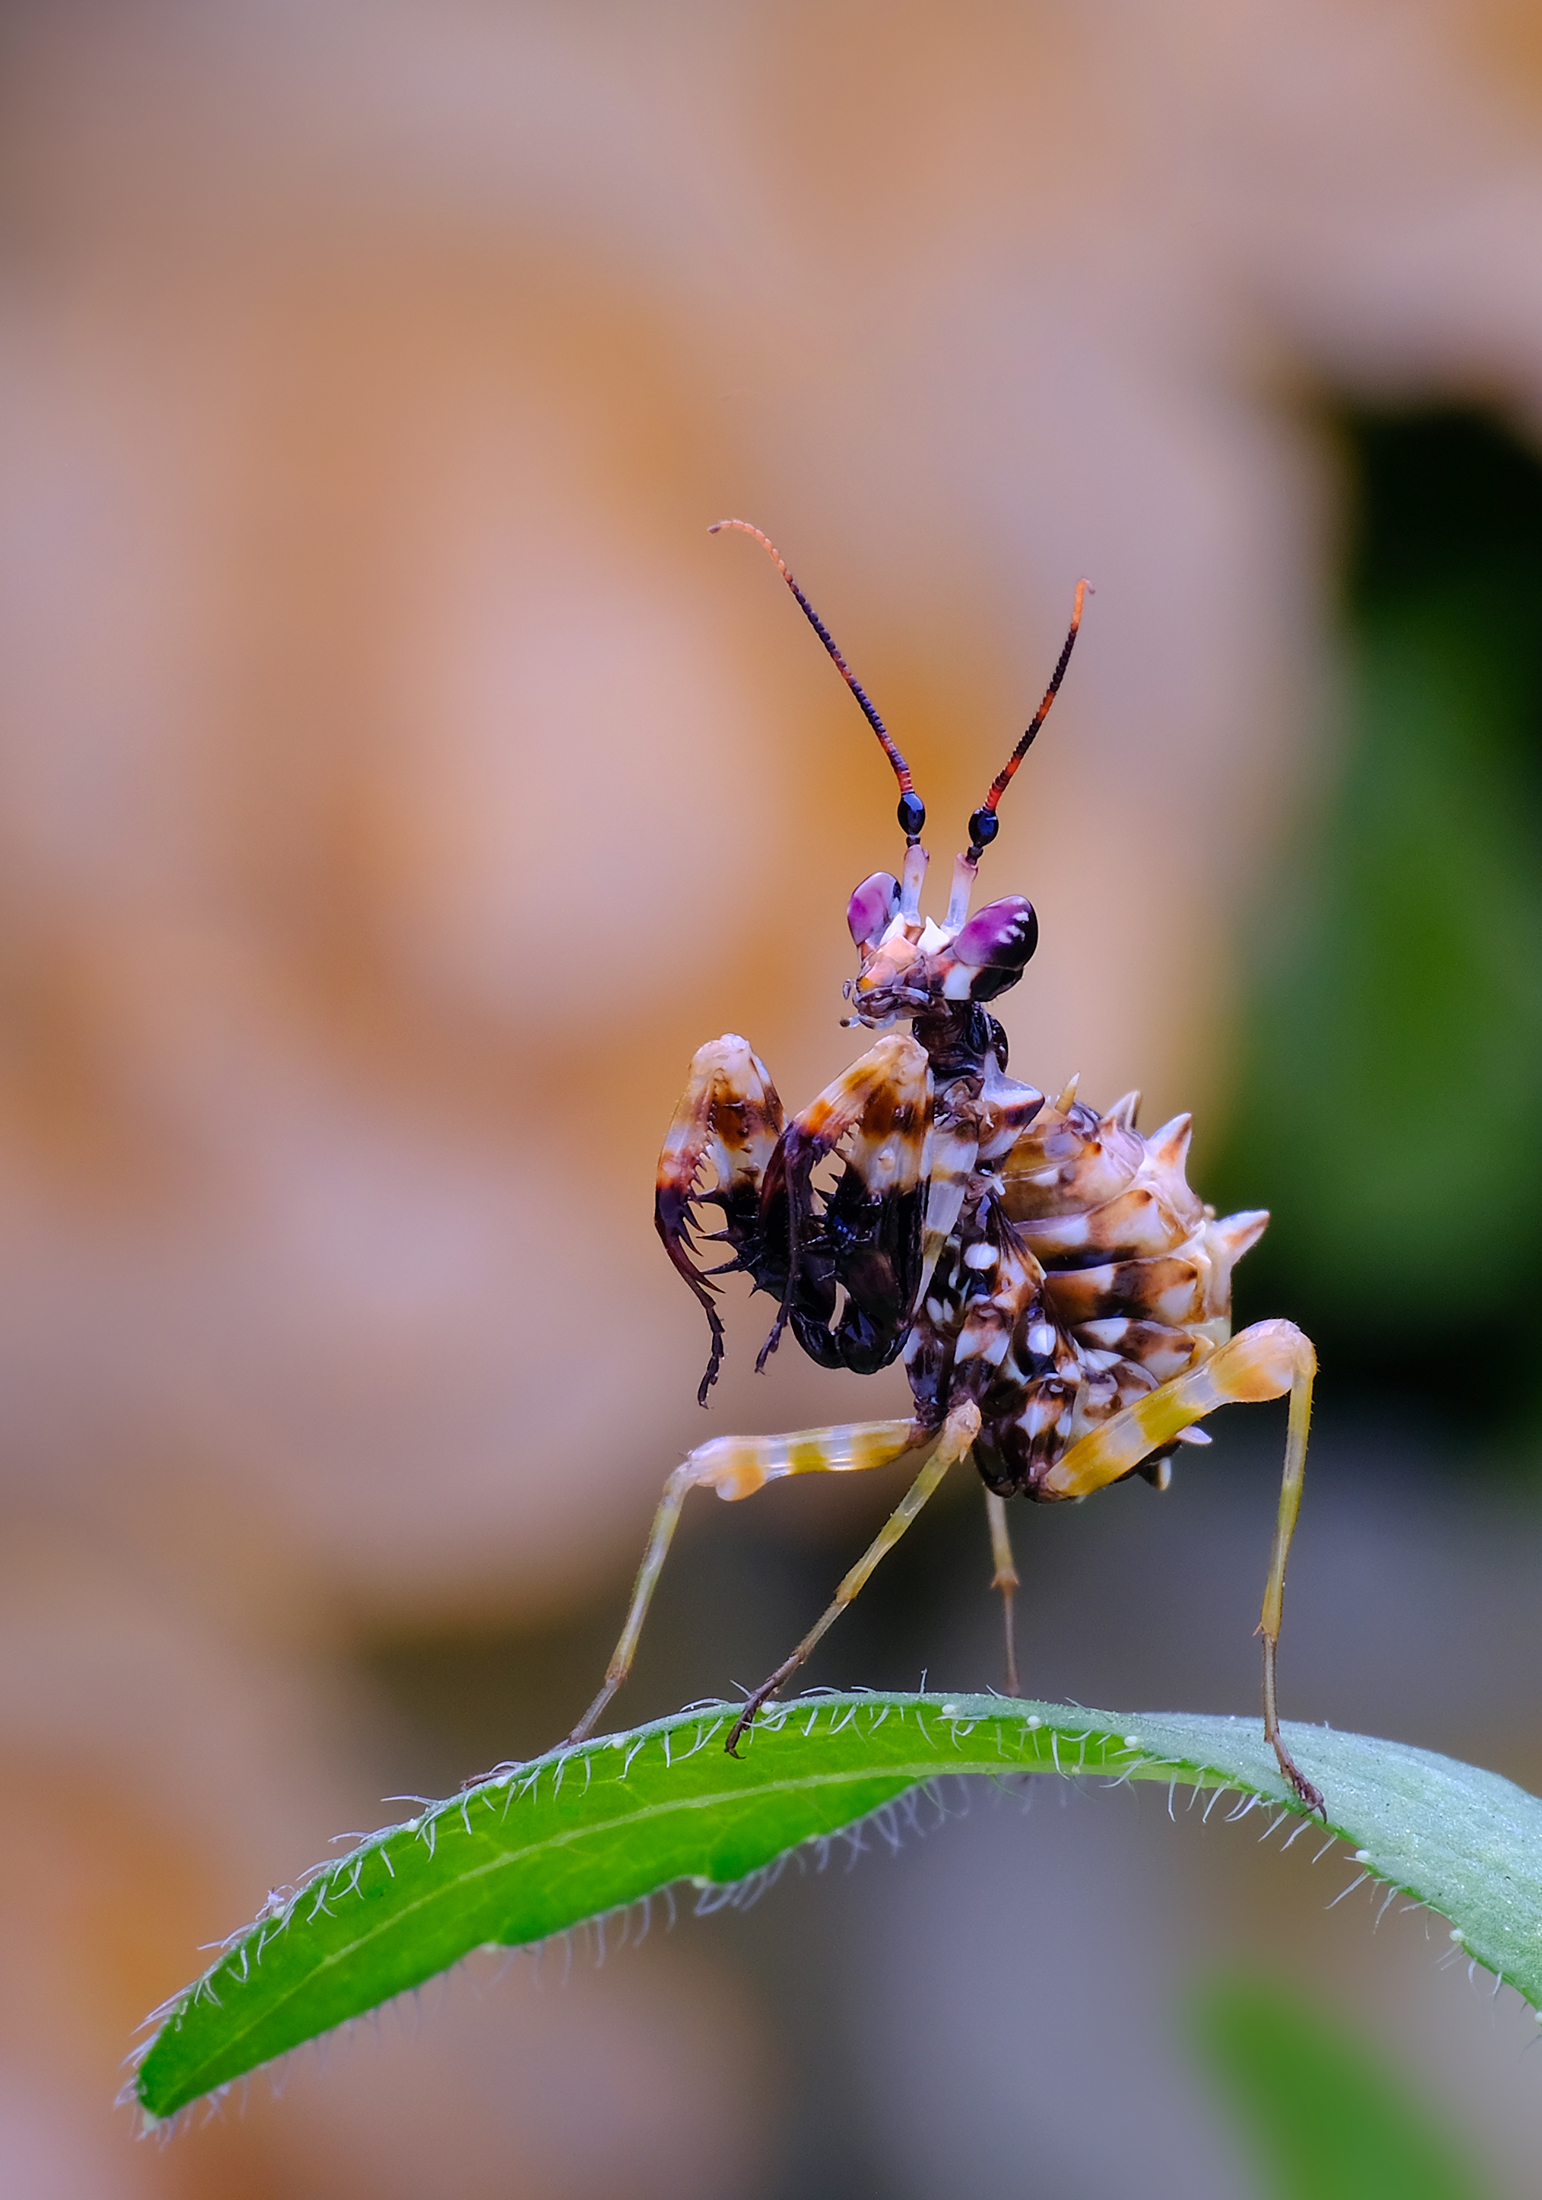 刺花螳螂 有多大图片